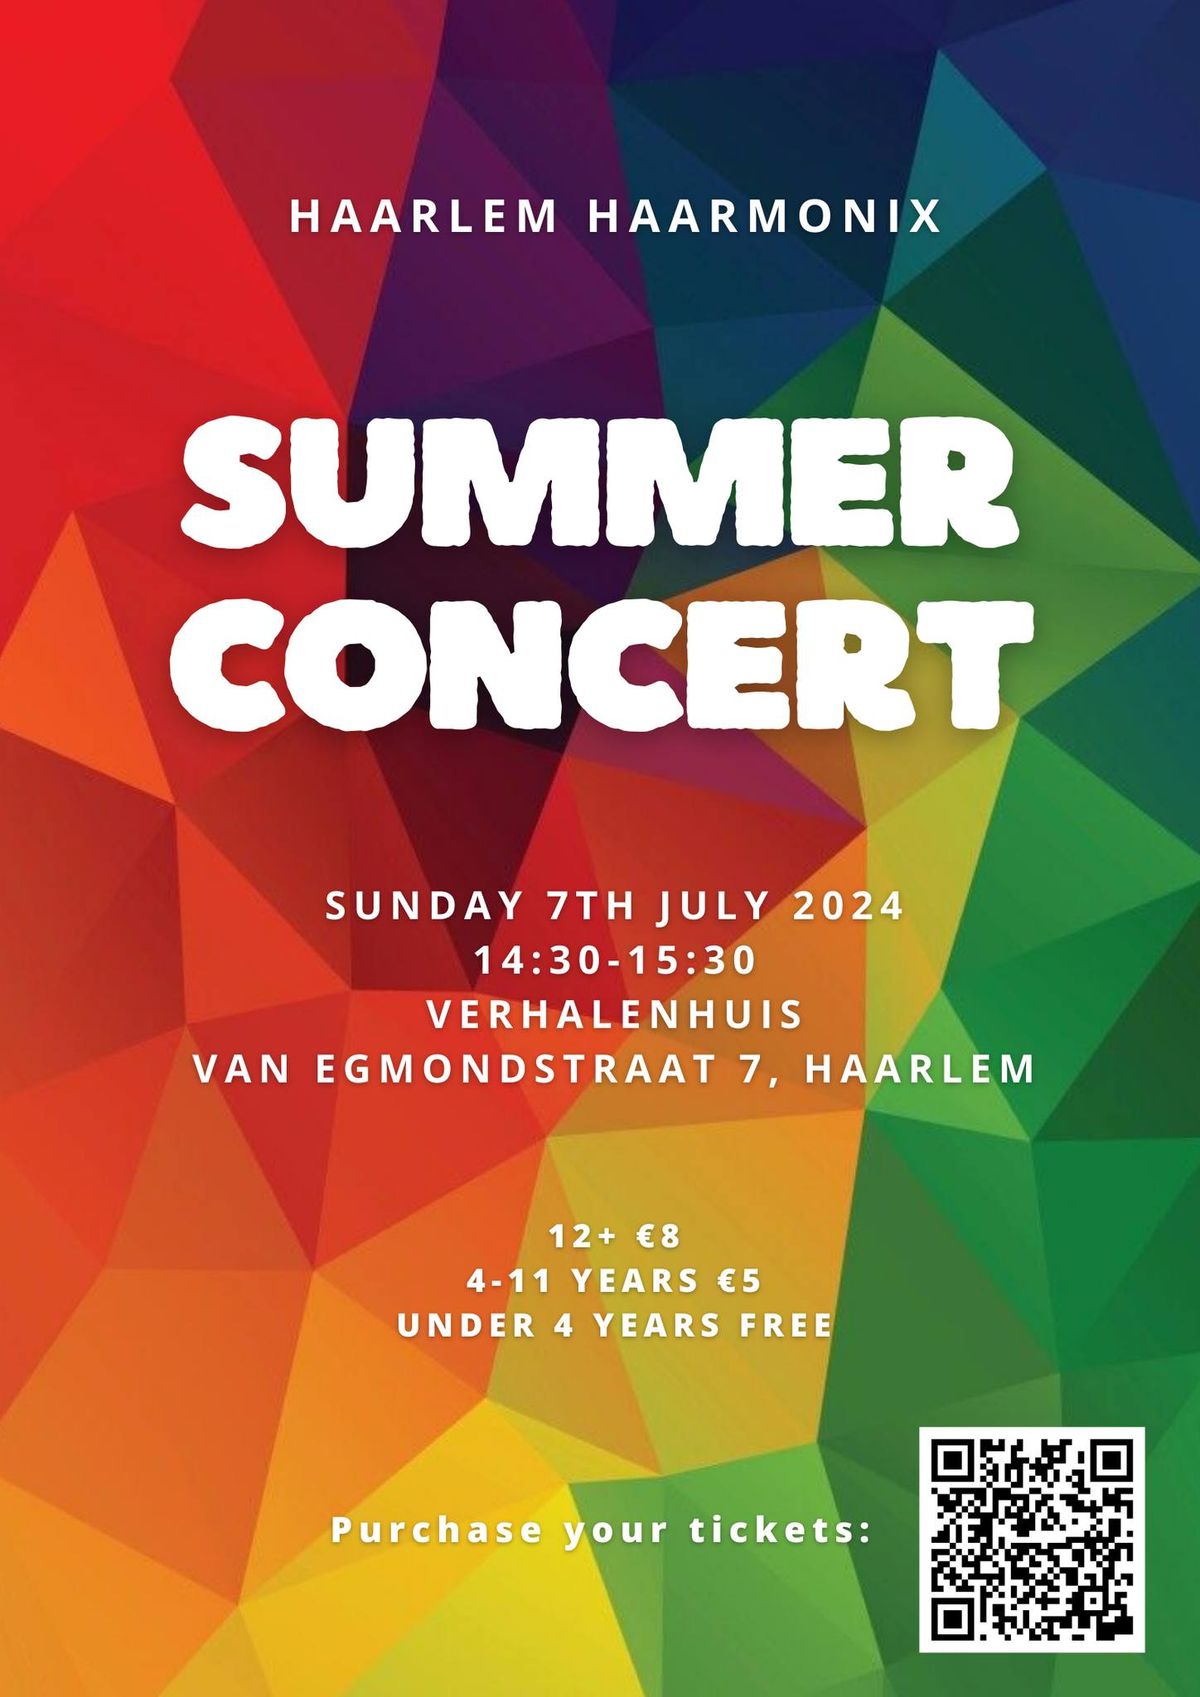 Haarlem Haarmonix Summer Concert